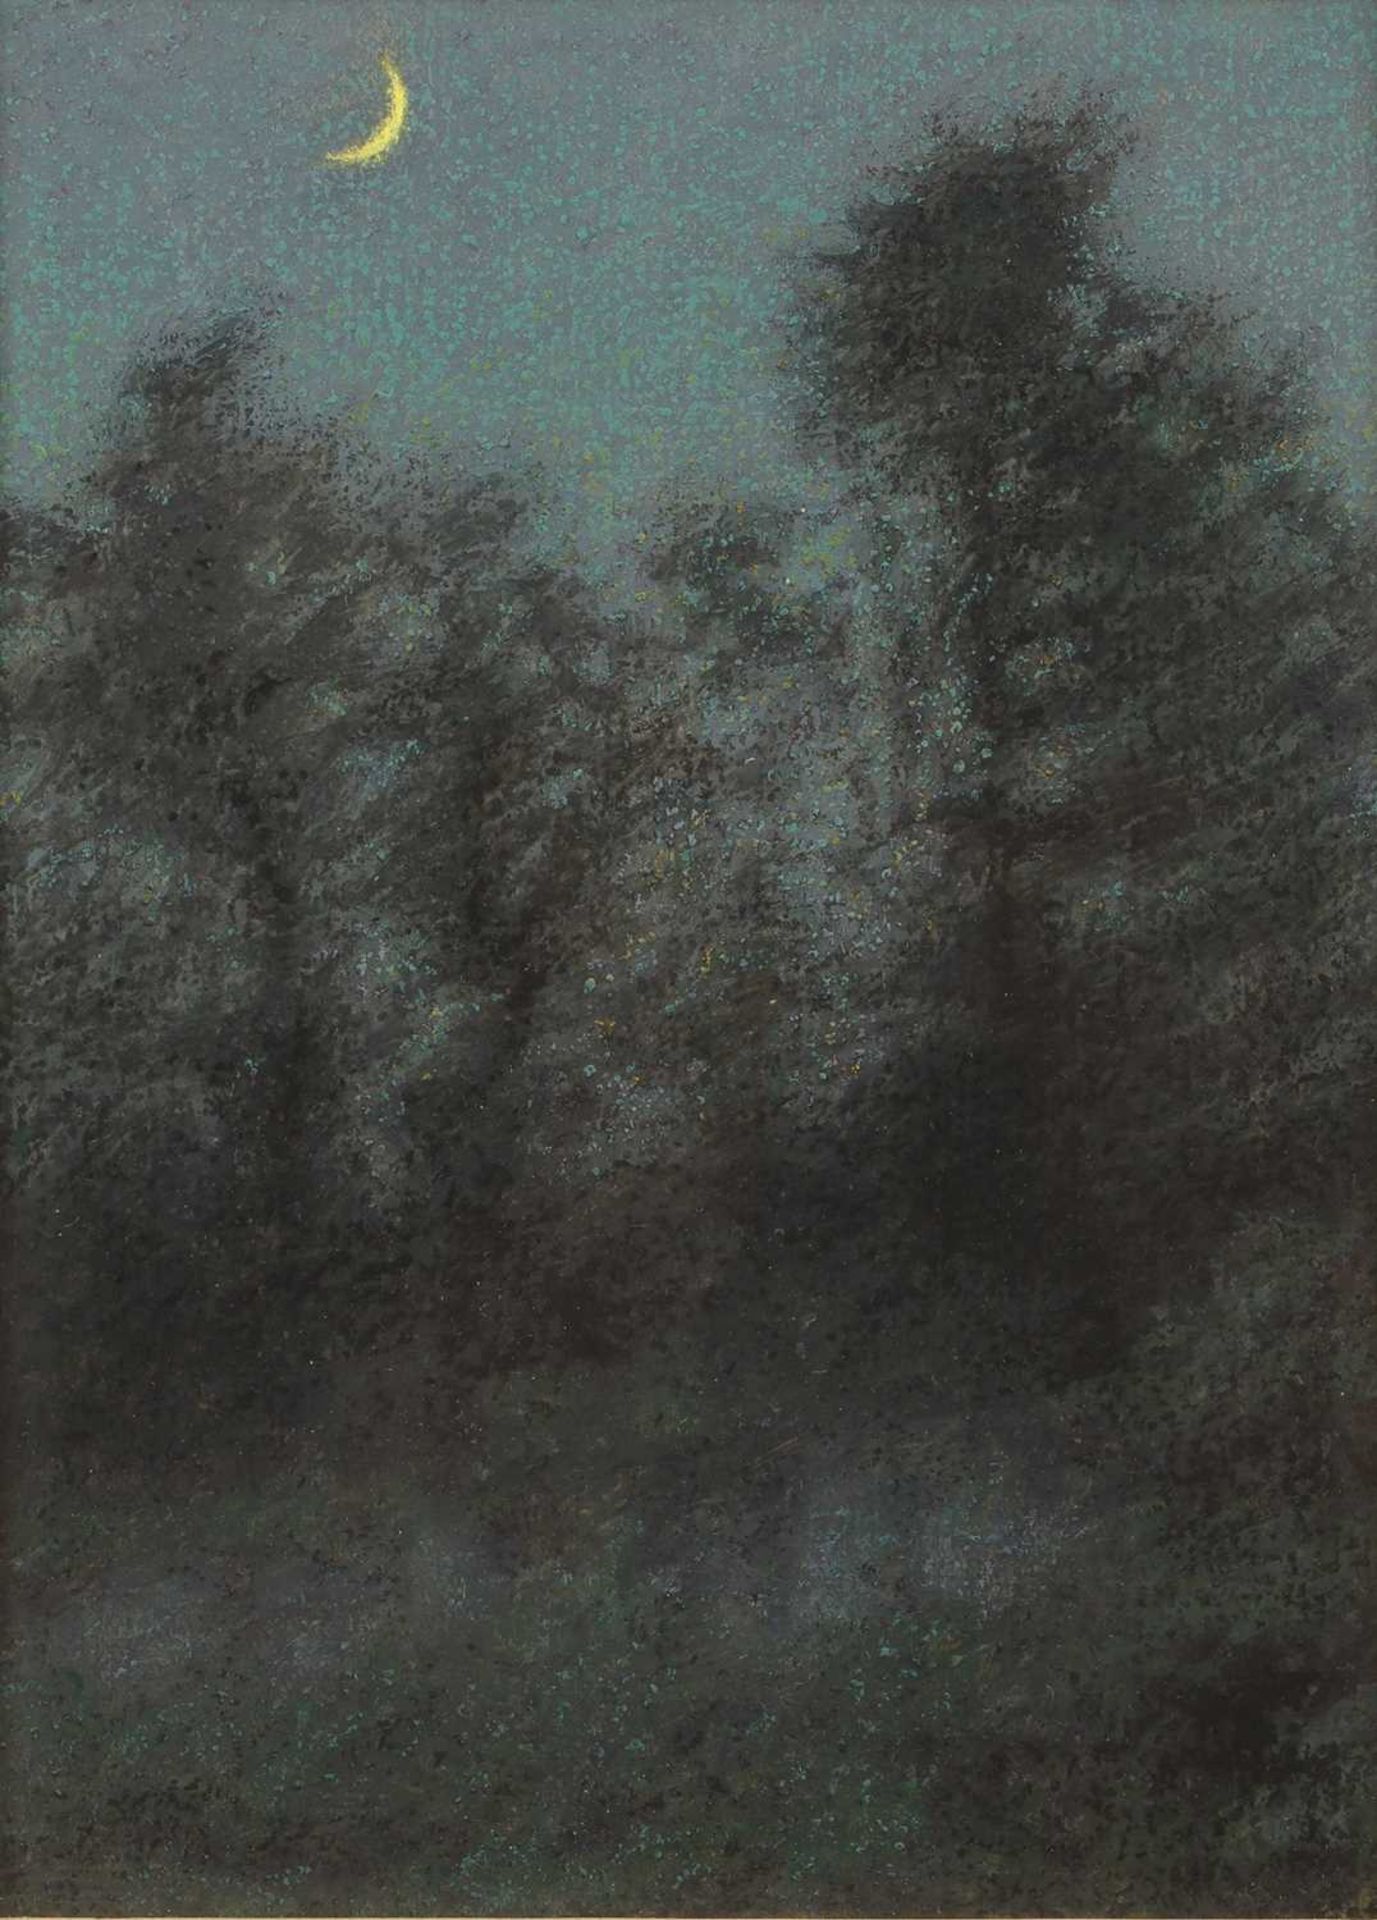 Herbert Dalziel (1858-1941) The Crescent Moon, pastel, 20 x 14cm